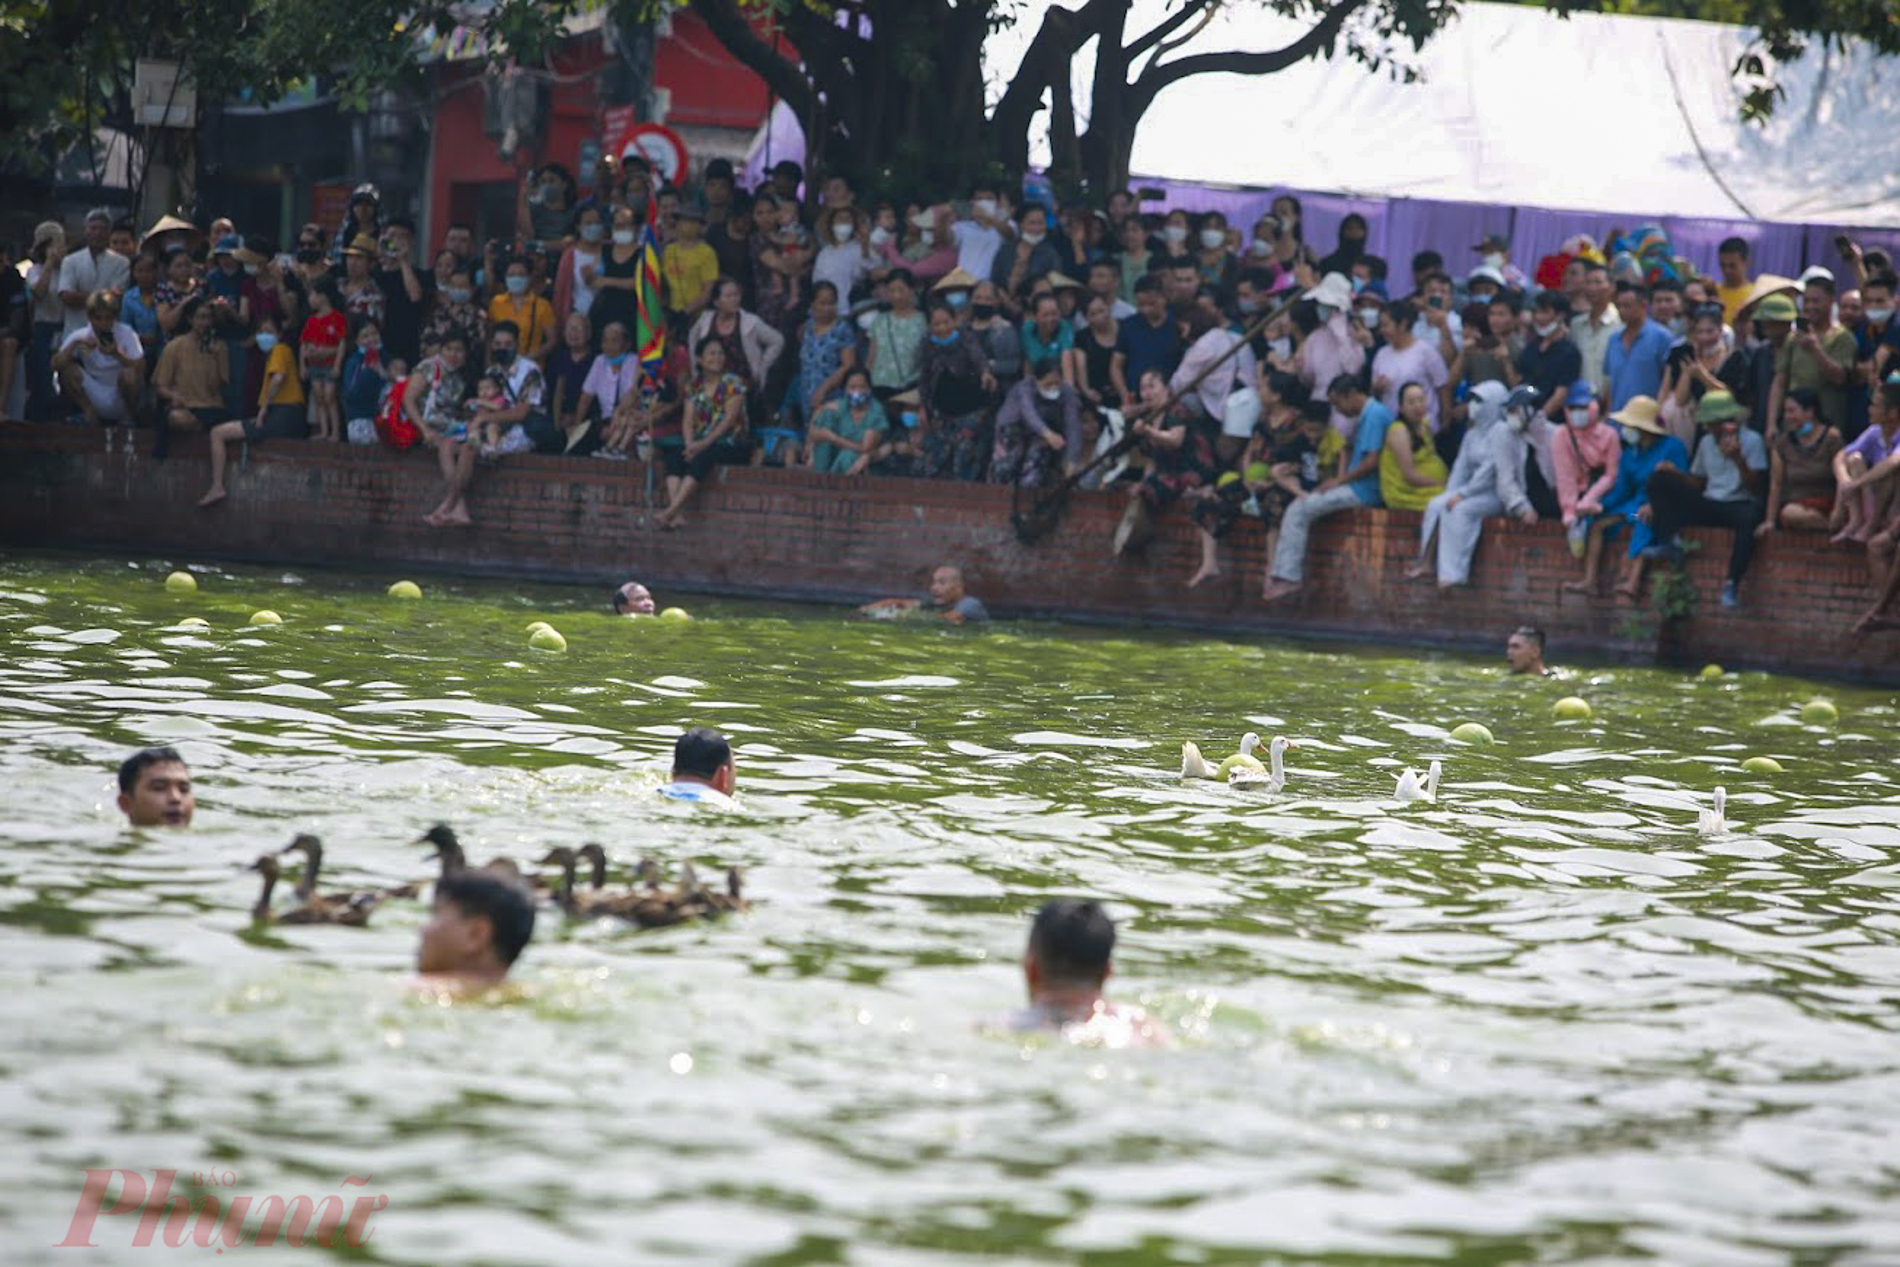 Ghi nhận của PV, sáng ngày 7/9, hàng ngàn người đã nô nức kéo về làng Triều Khúc để tham dự lễ hội đặc biệt nhân dịp hóa Thánh của Đức Bố Cái Đại Vương Phùng Hưng (13/8 âm lịch).